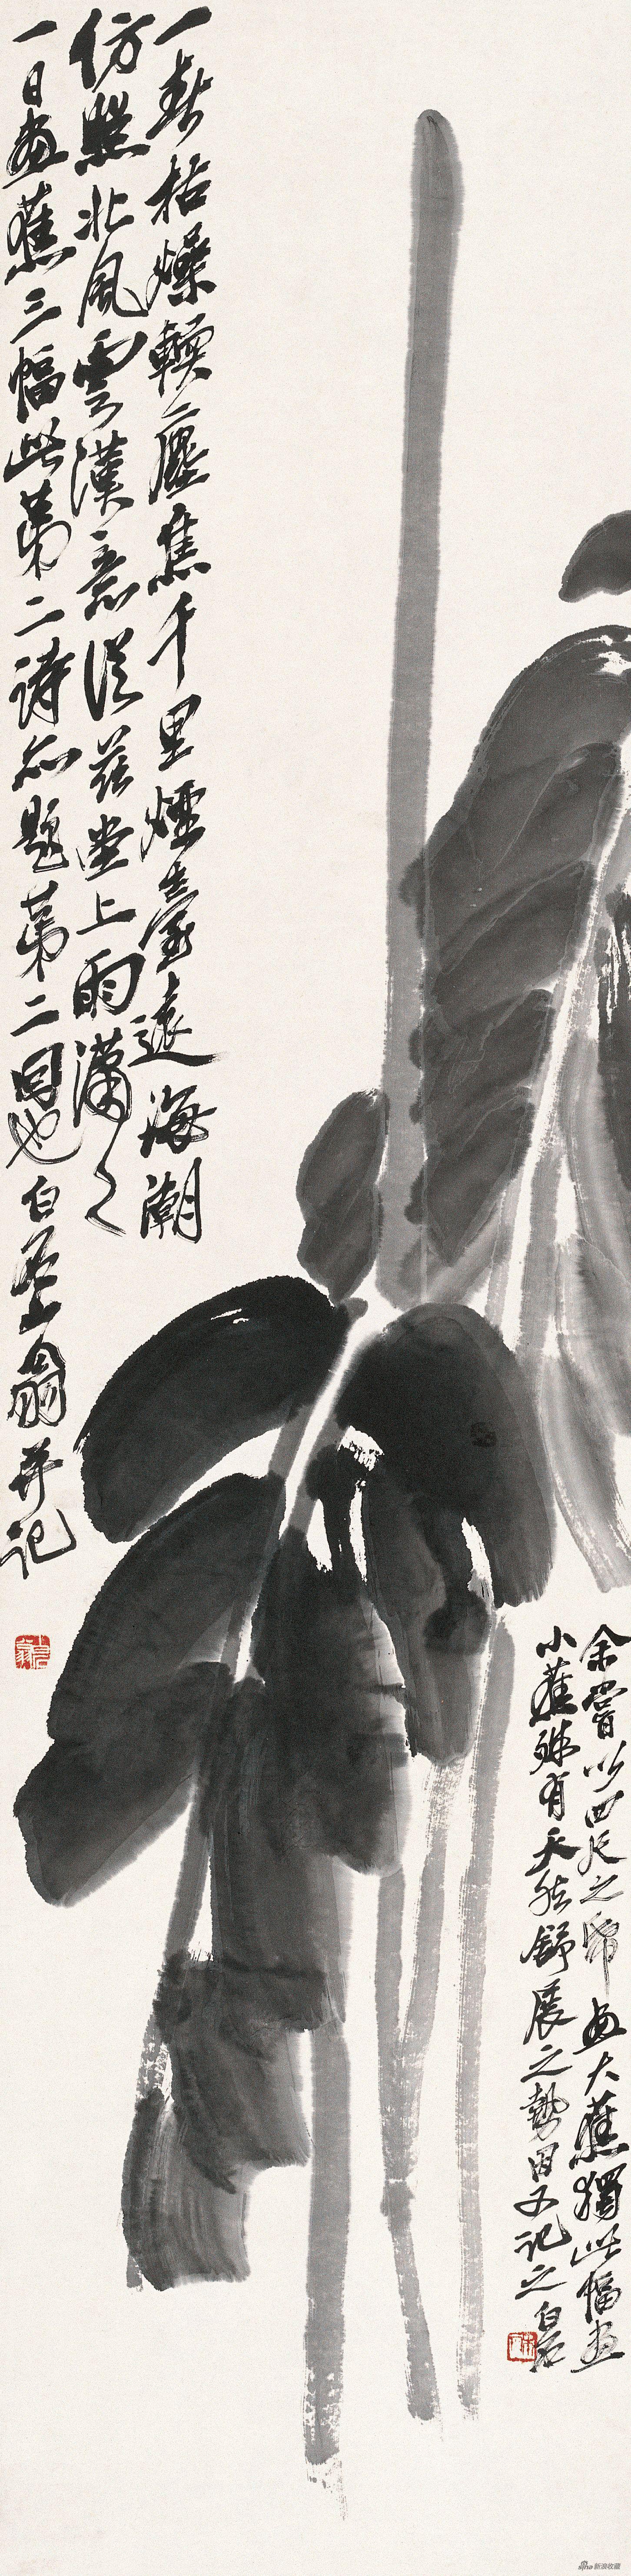 芭蕉图 齐白石 135cm×33.5cm 纸本水墨 无年款 北京画院藏